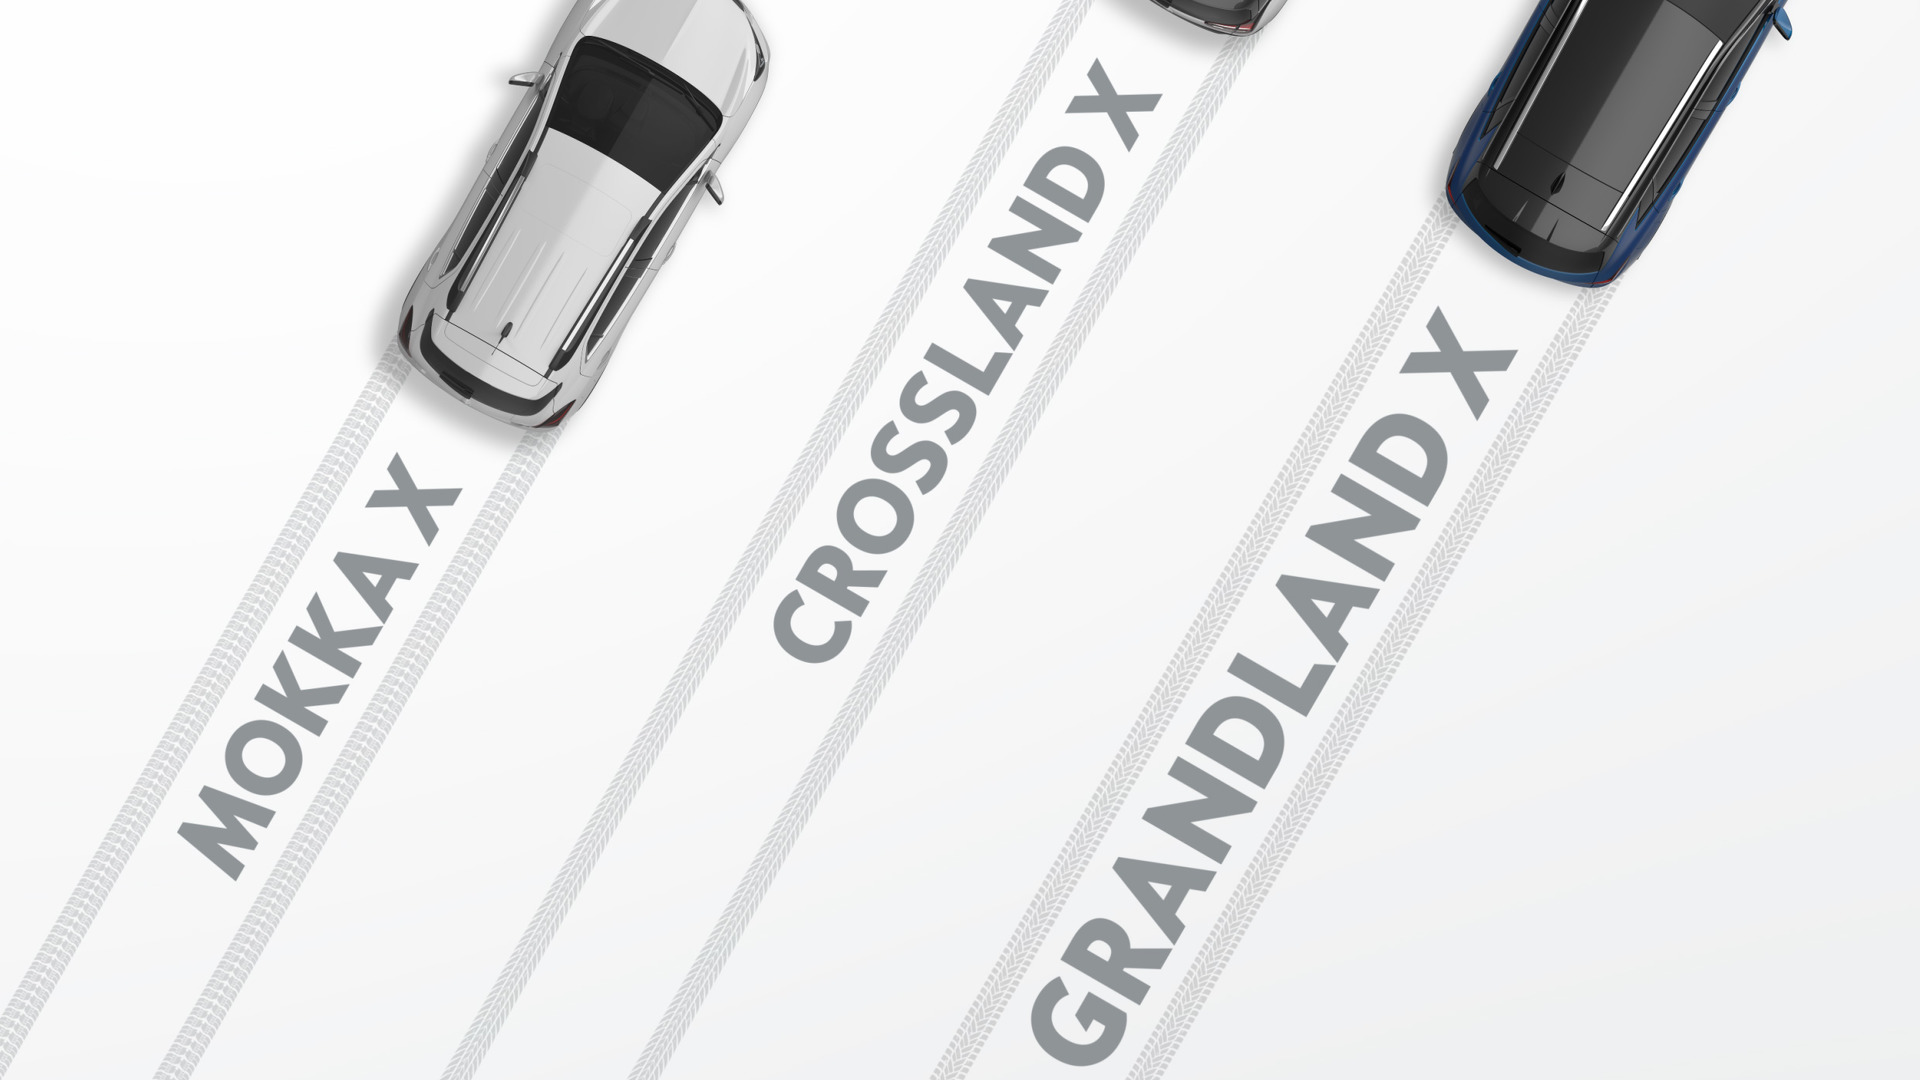 Opel Grandland X confirmed as Astra SUV, RAV4 rival